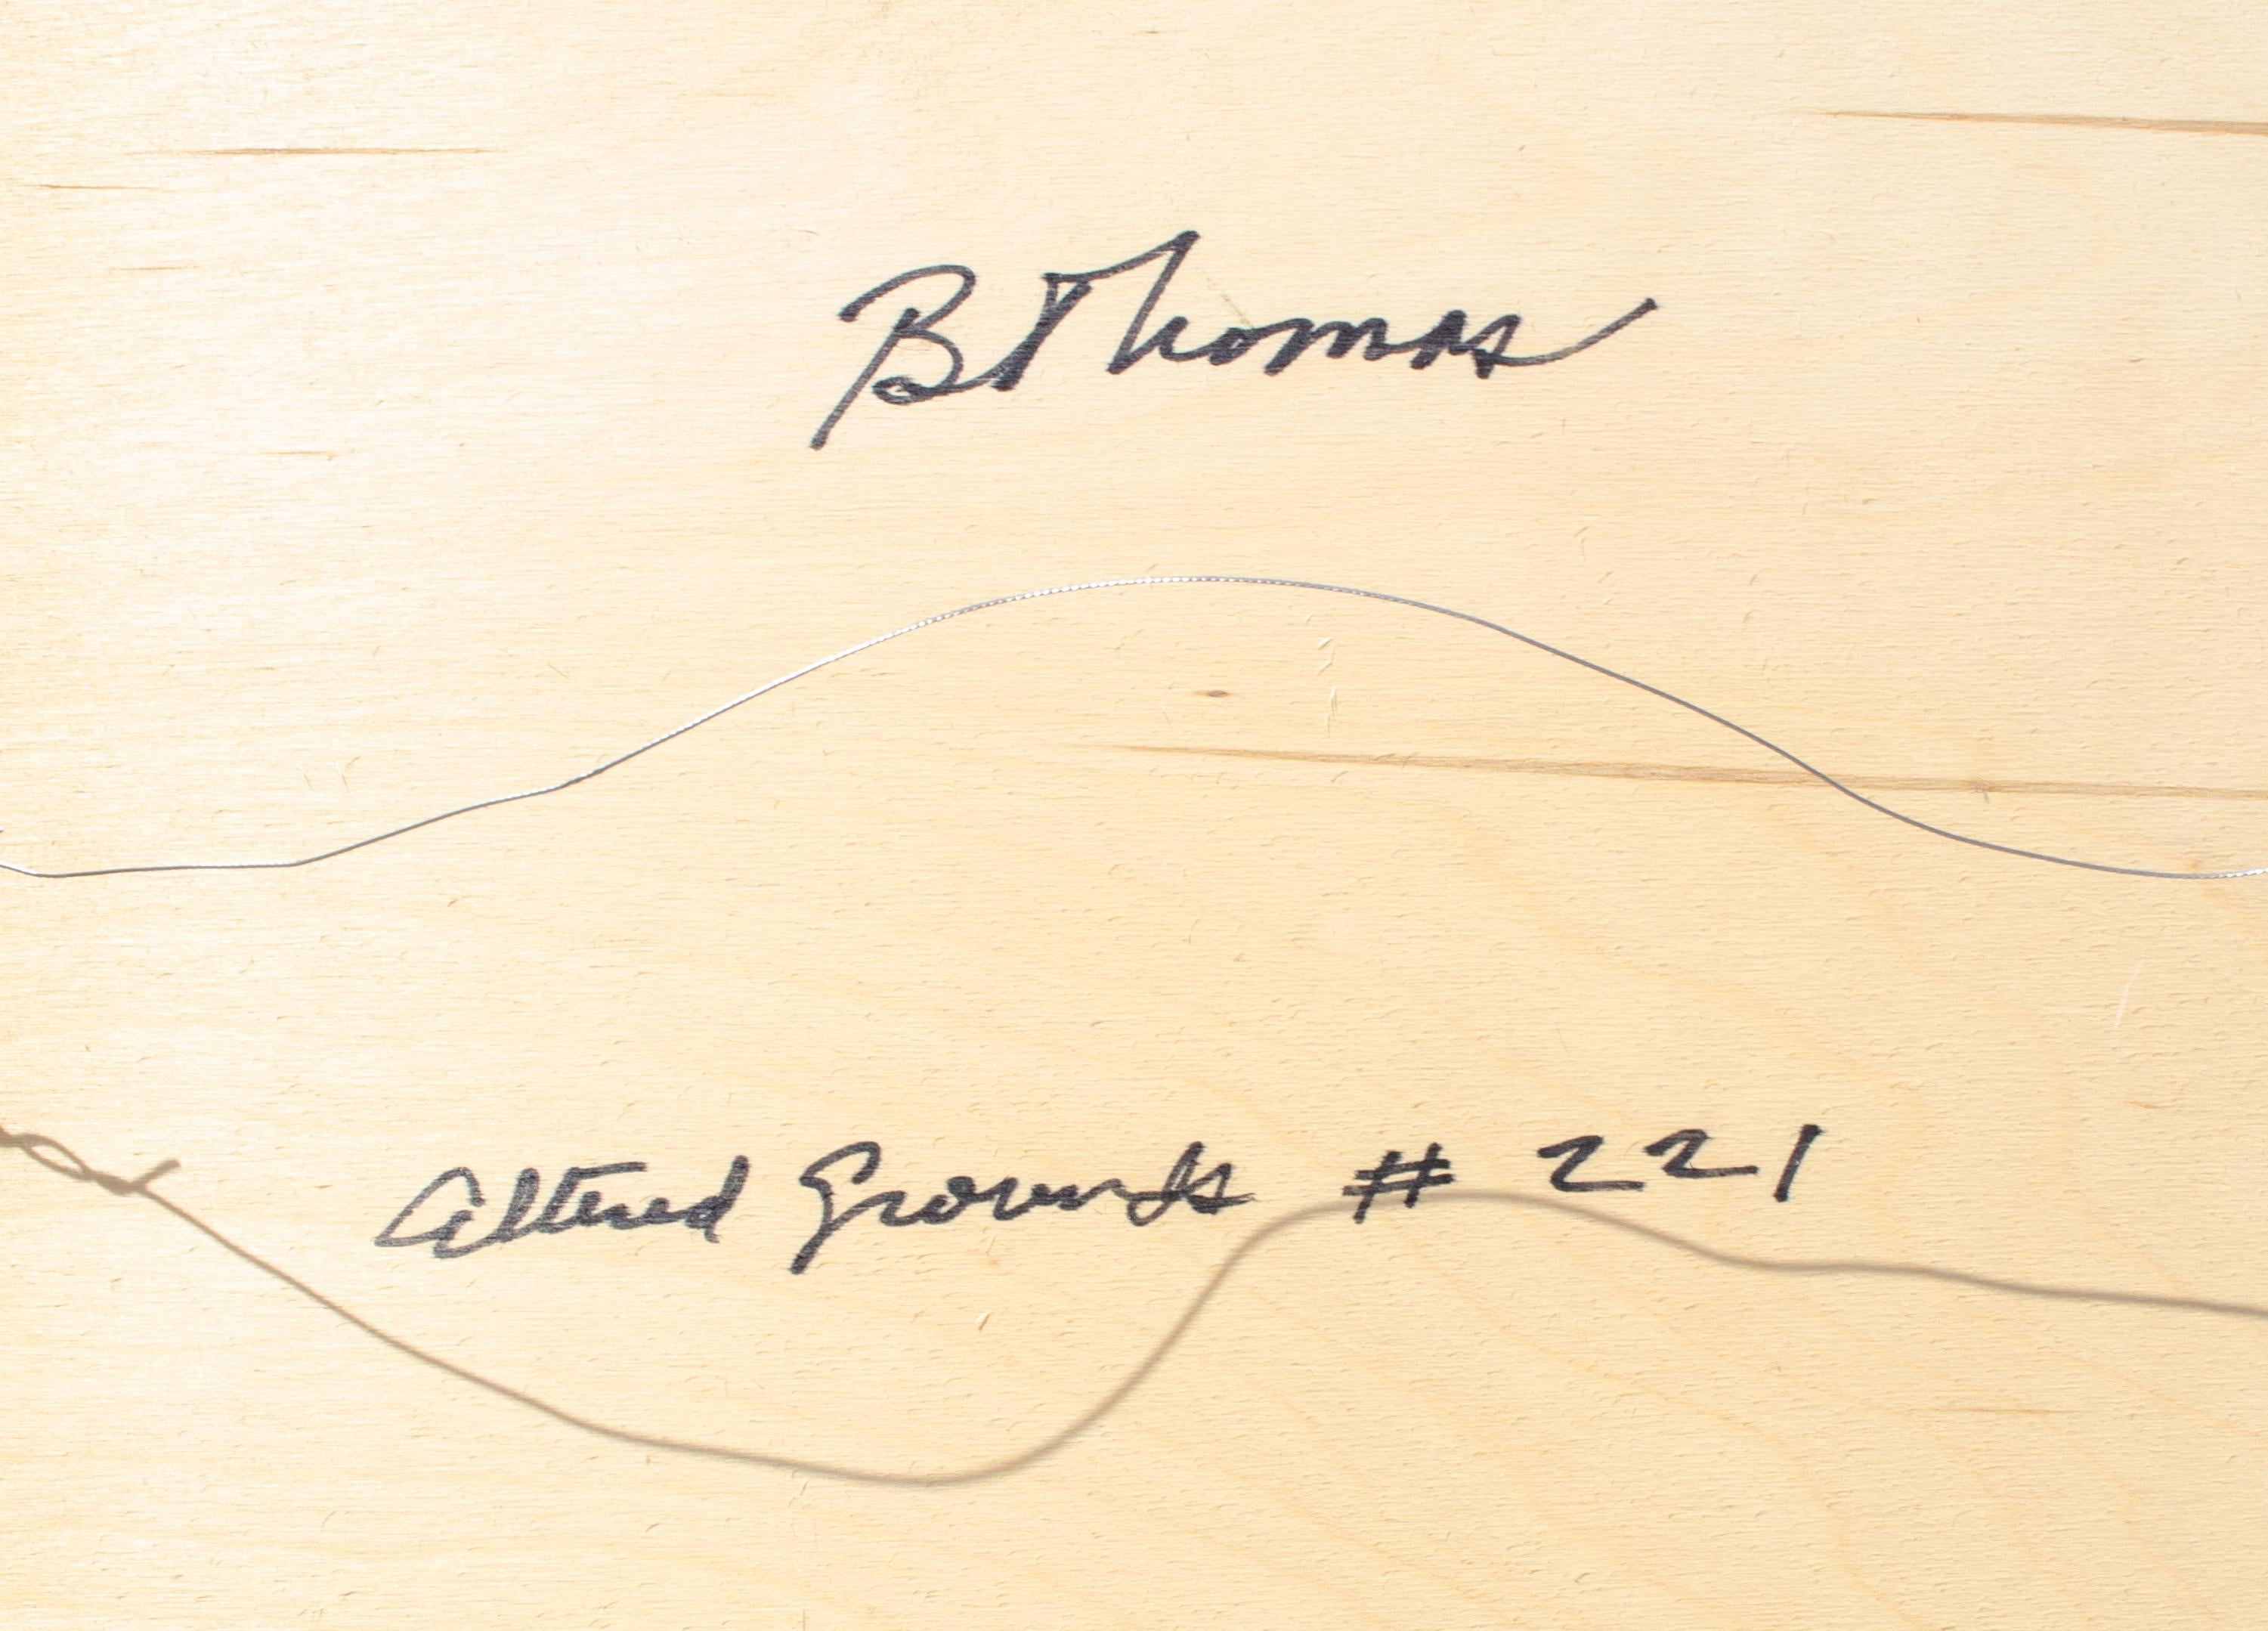 Bob Thomas (américain, 1945-2018)
Altered Grounds #221, c. 2010
Technique mixte sur bois
24 x 24 x 1 in.

Robert 